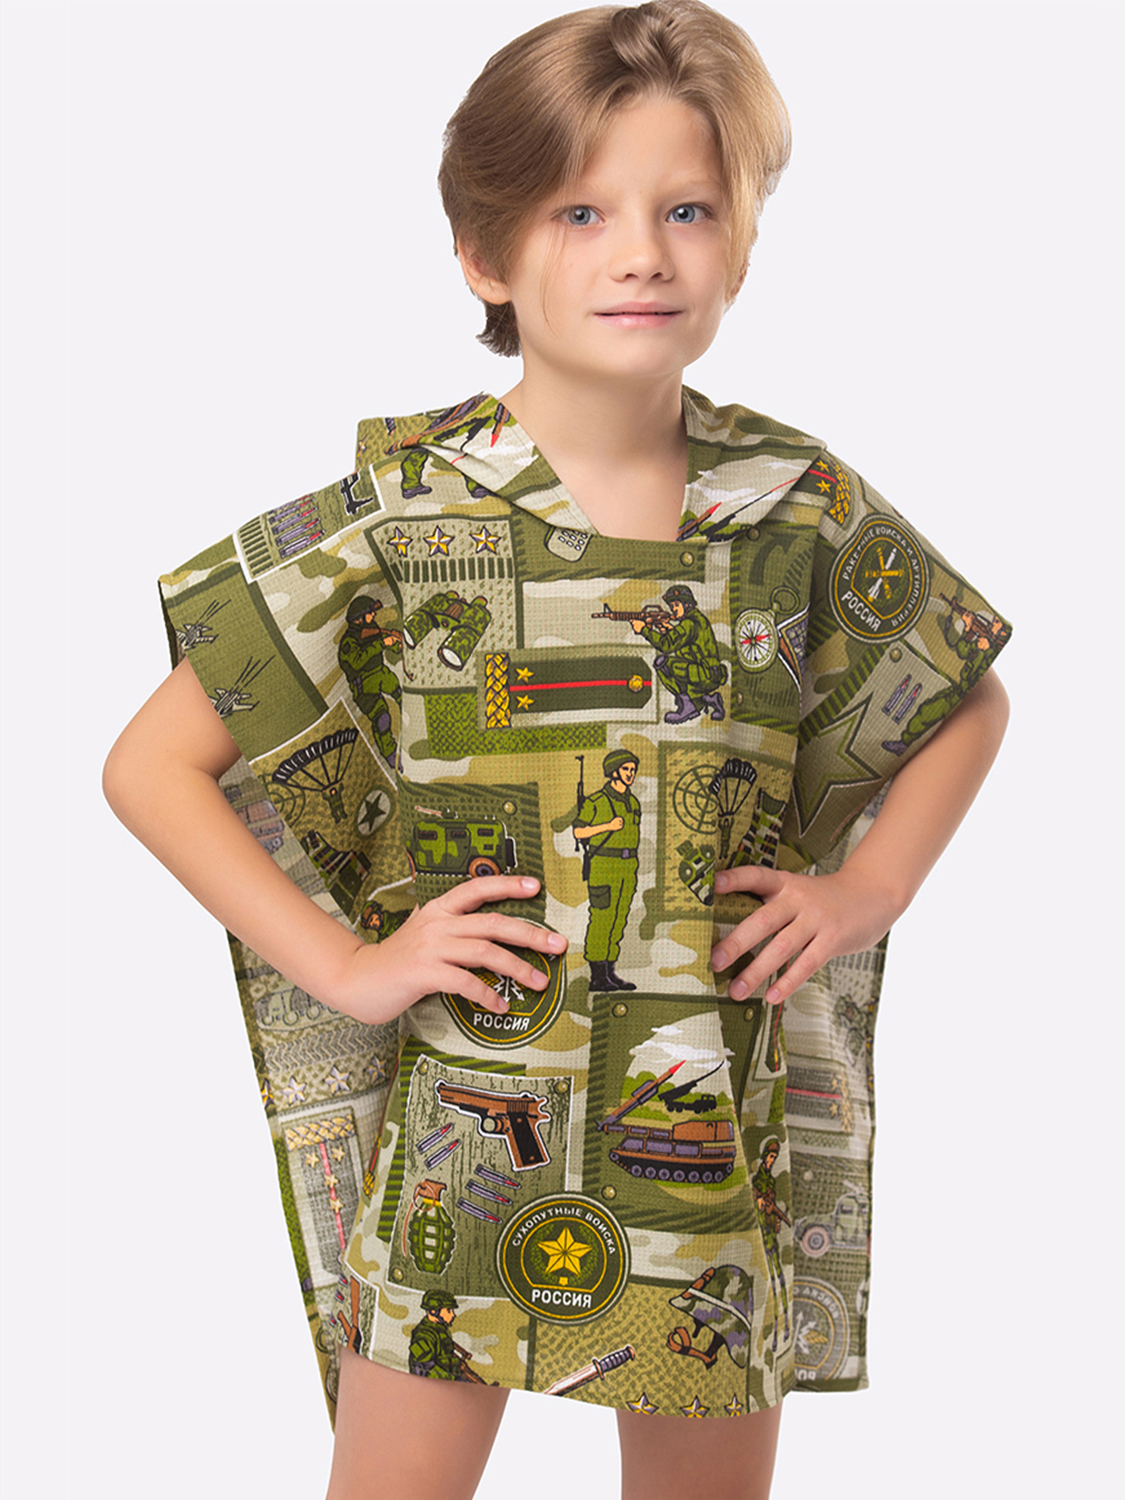 фото Полотенце детское happyfox пончно hf1263pntey размер 60x54 см, армия